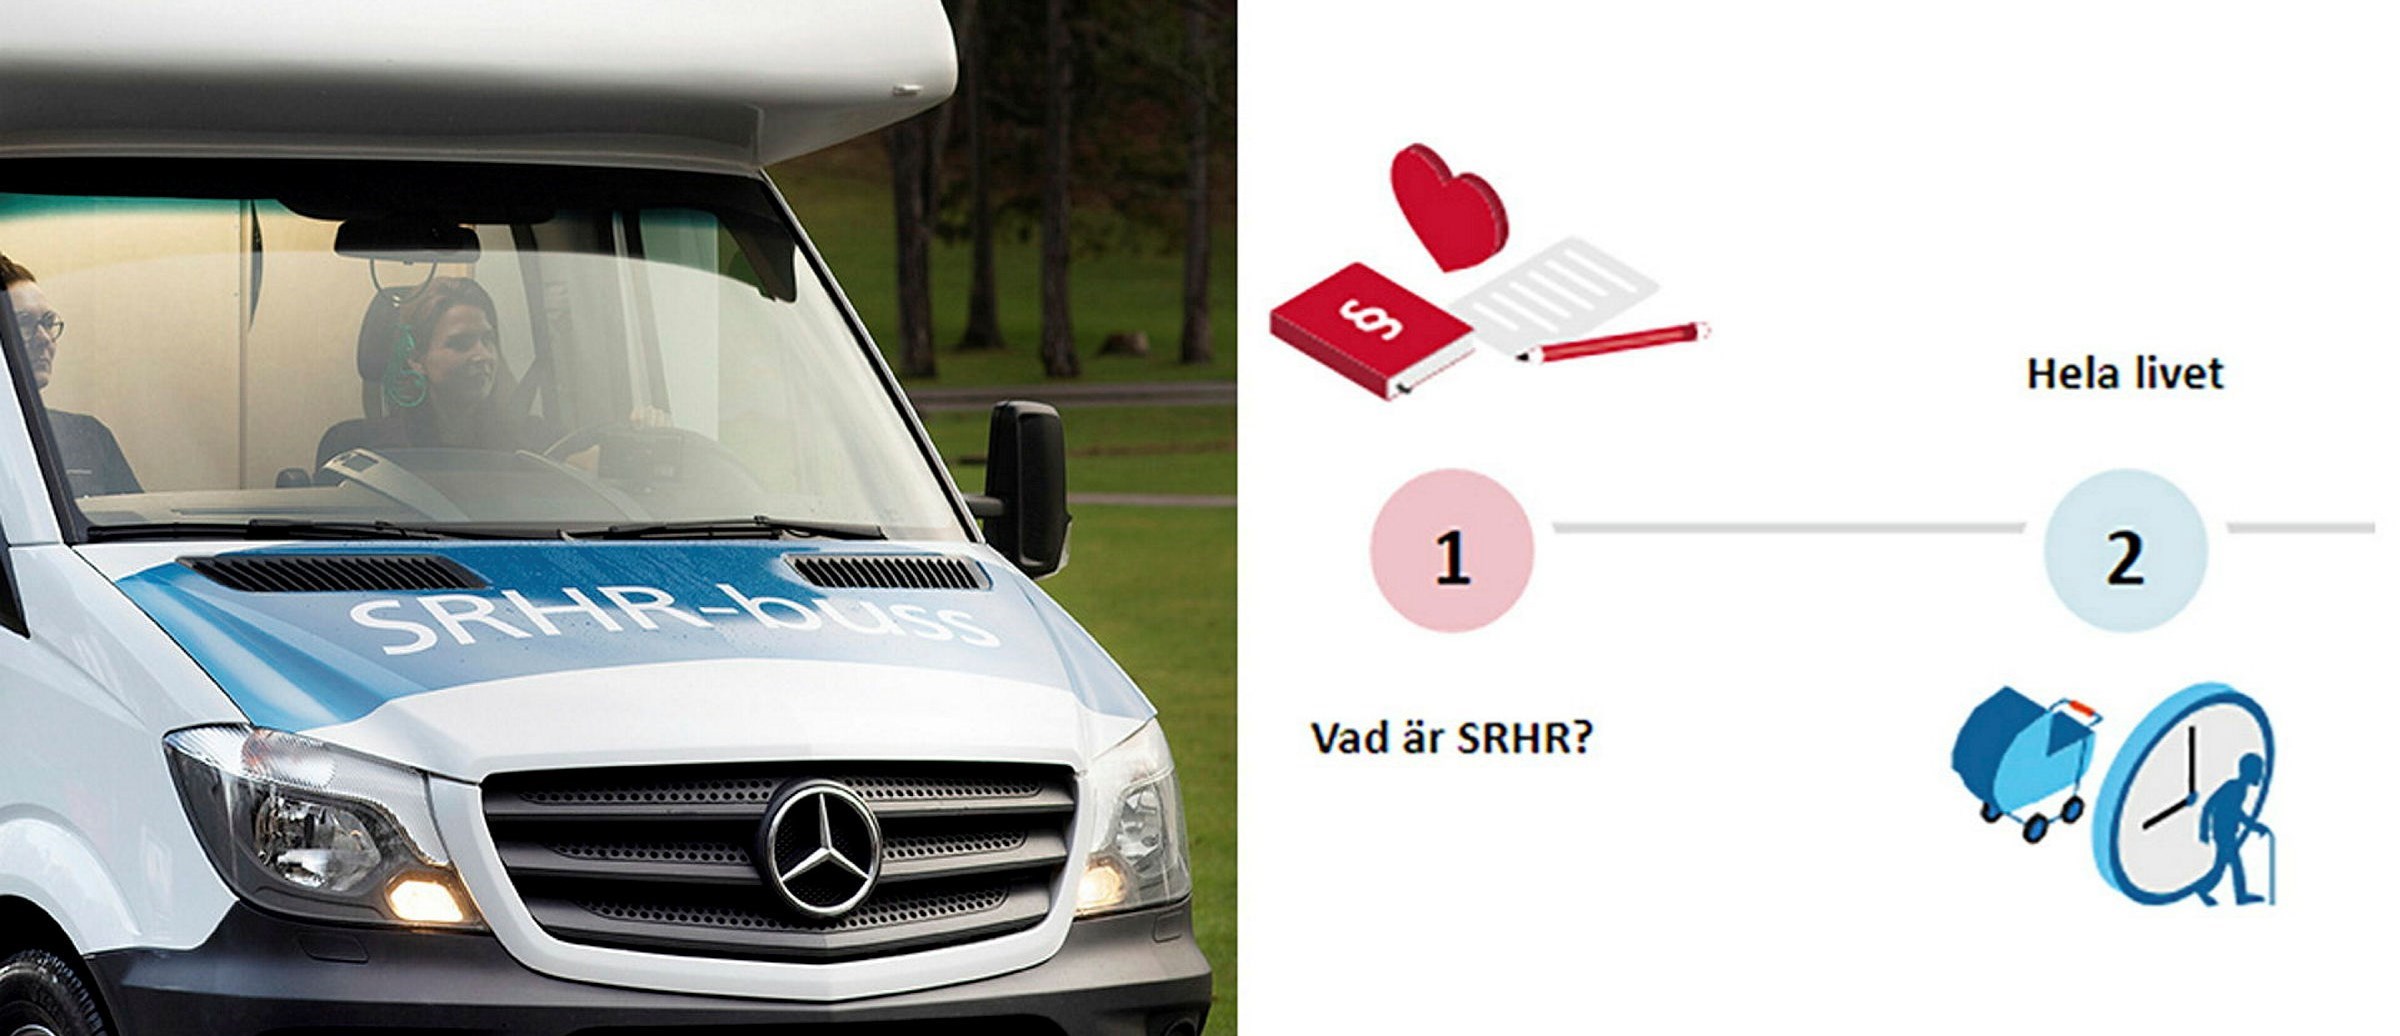 Bildmontage med SRHR-bussen och illustration med text Vad är SRHR och Hela livet